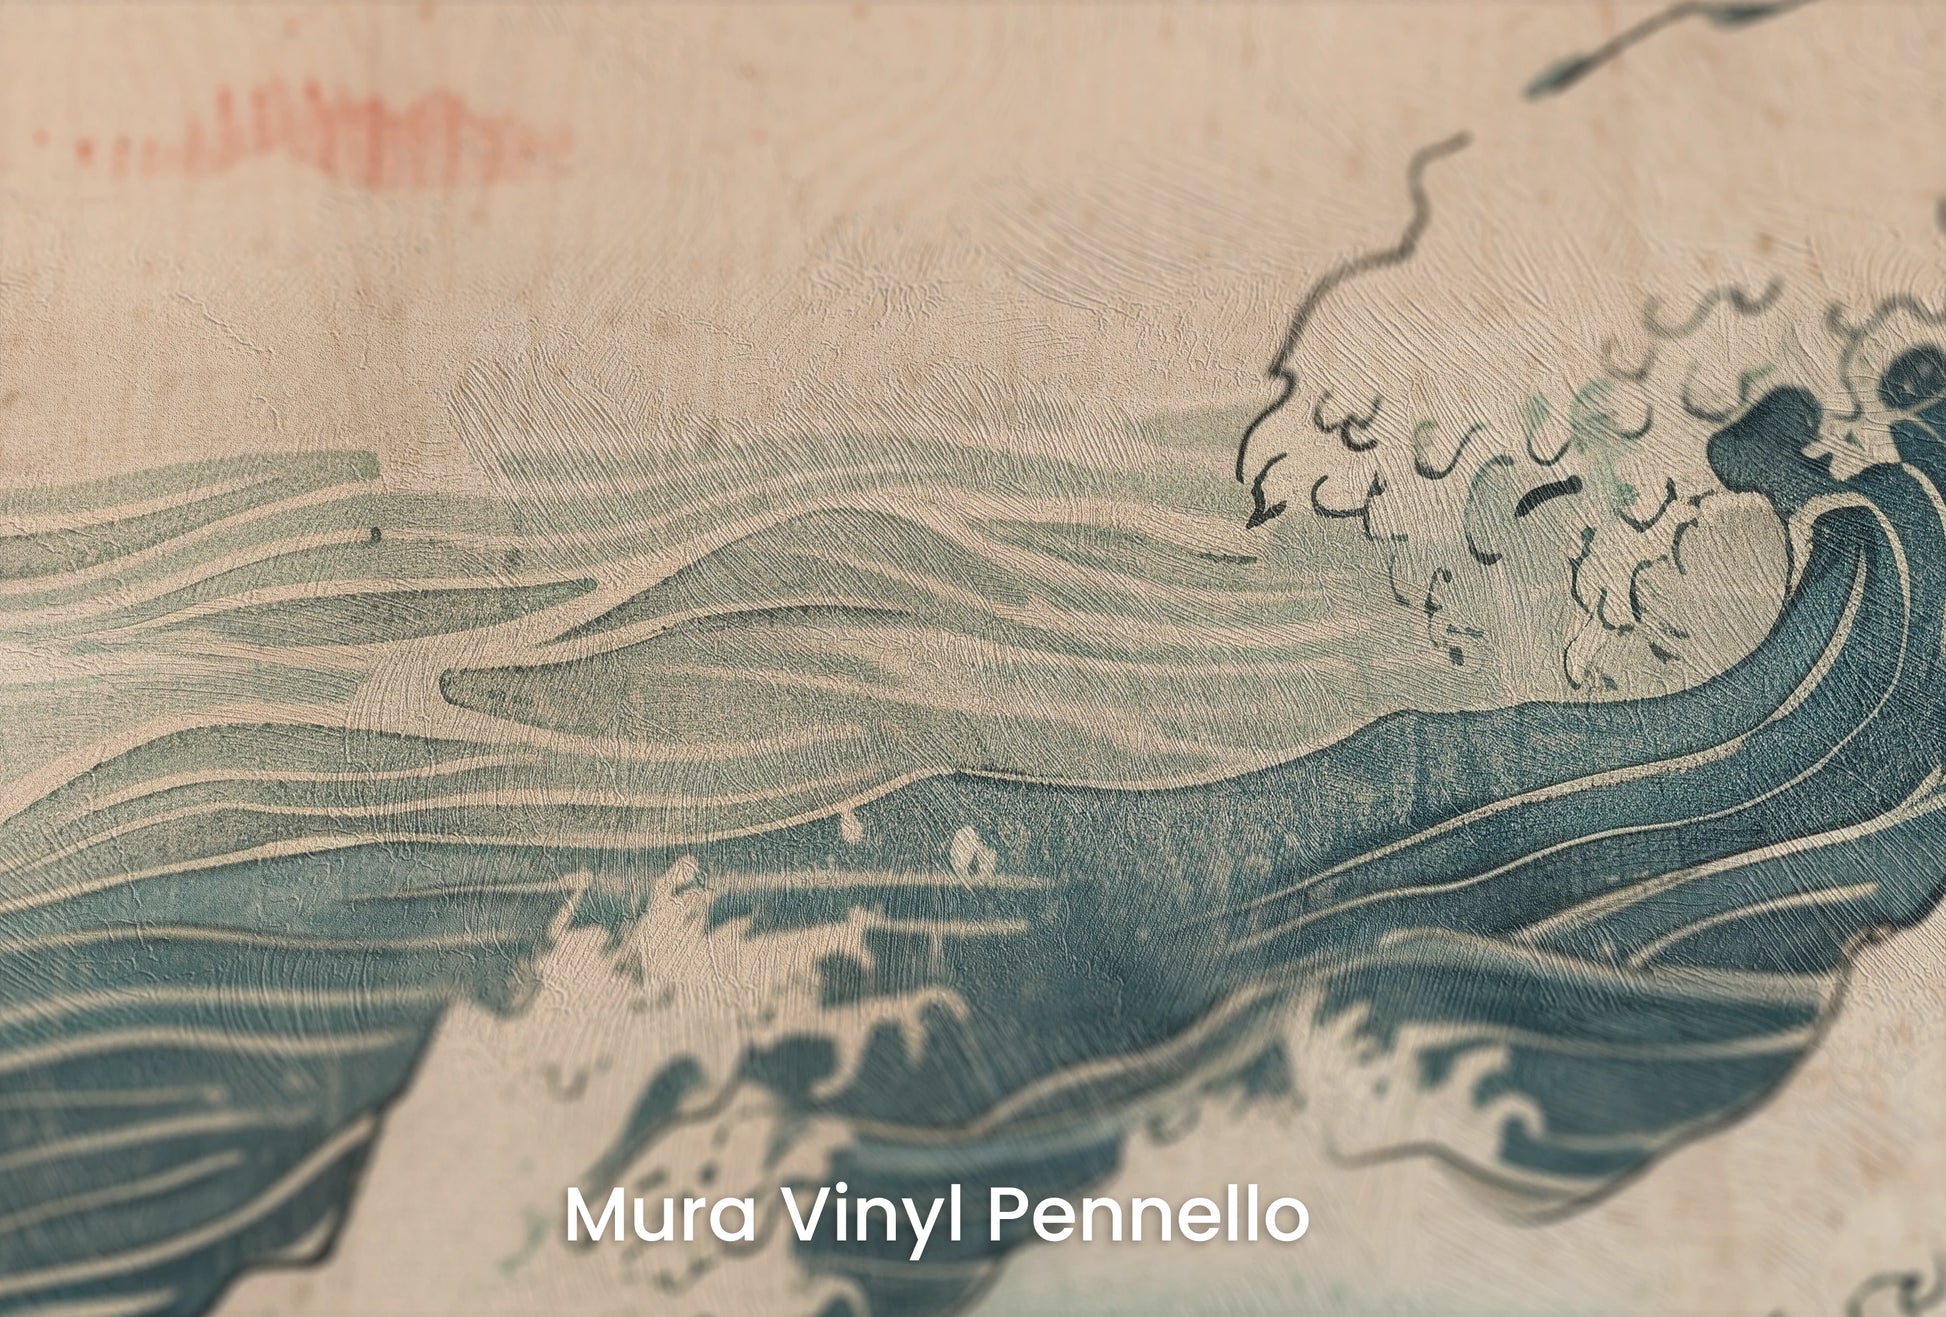 Zbliżenie na artystyczną fototapetę o nazwie Edo's Sunrise na podłożu Mura Vinyl Pennello - faktura pociągnięć pędzla malarskiego.